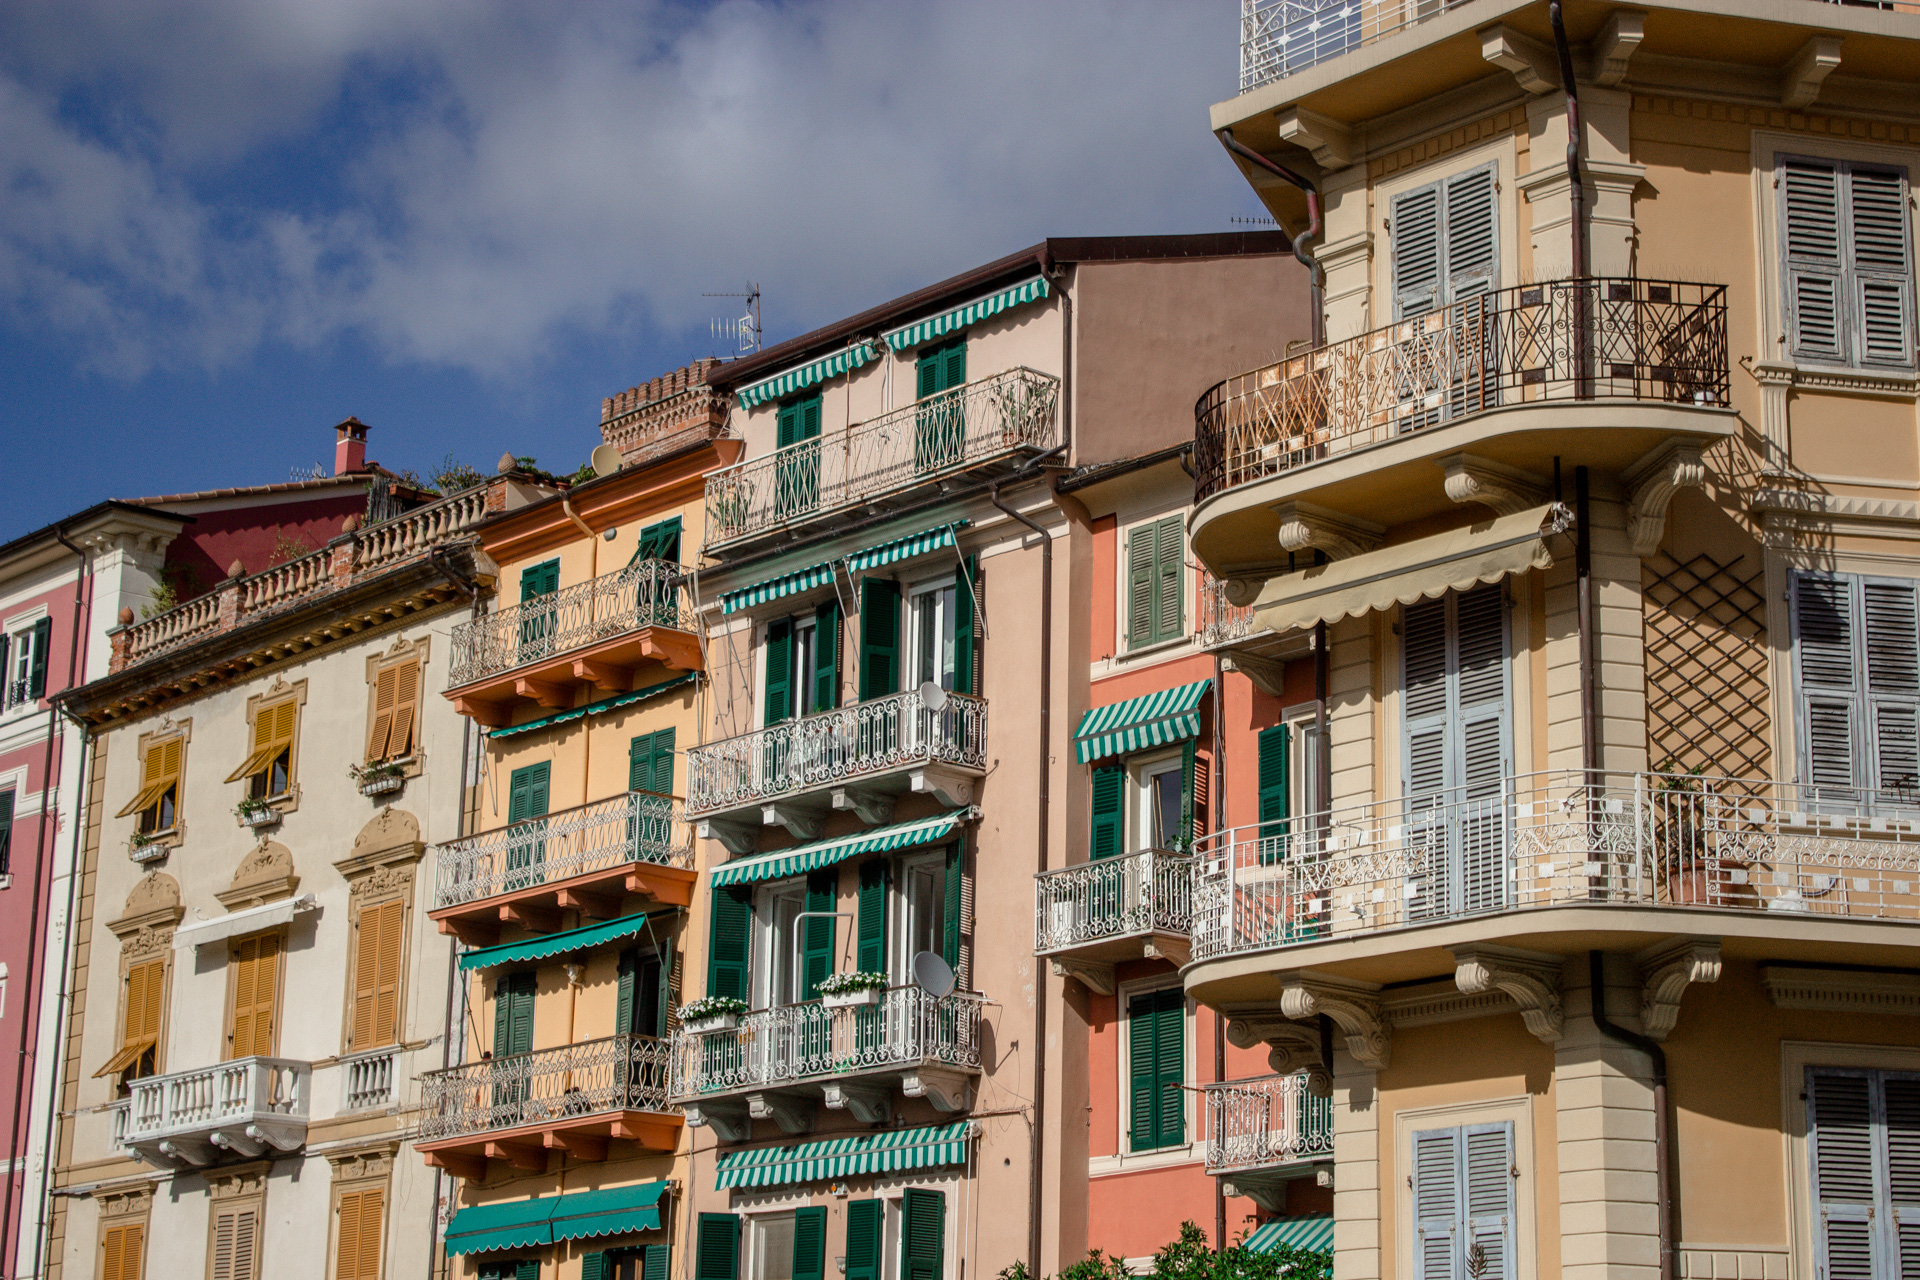 Lerici. Überall in Ligurien sehen die Häuserfassaden so schön bunt aus, haben kleine Balkone und Holz-Fensterläden.